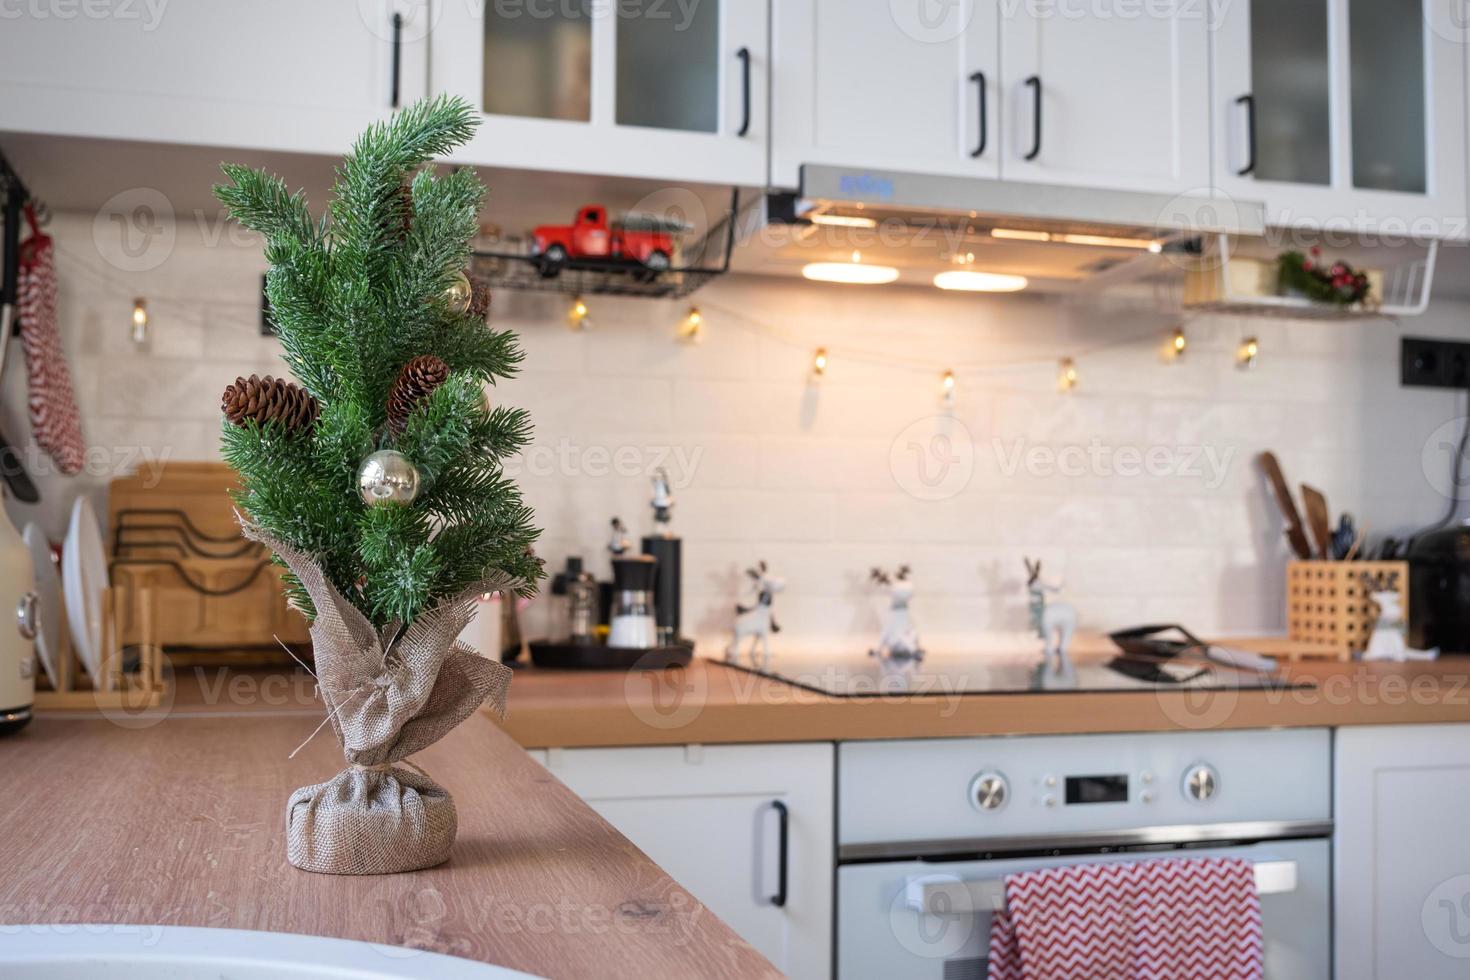 weihnachtsküchendekor - vorbereitung auf einen familienurlaub, lichterkette, weihnachtsbaum, rote verzierung, lustige hirsche auf schränken, herd. feierstimmung, vorabend, neujahr foto